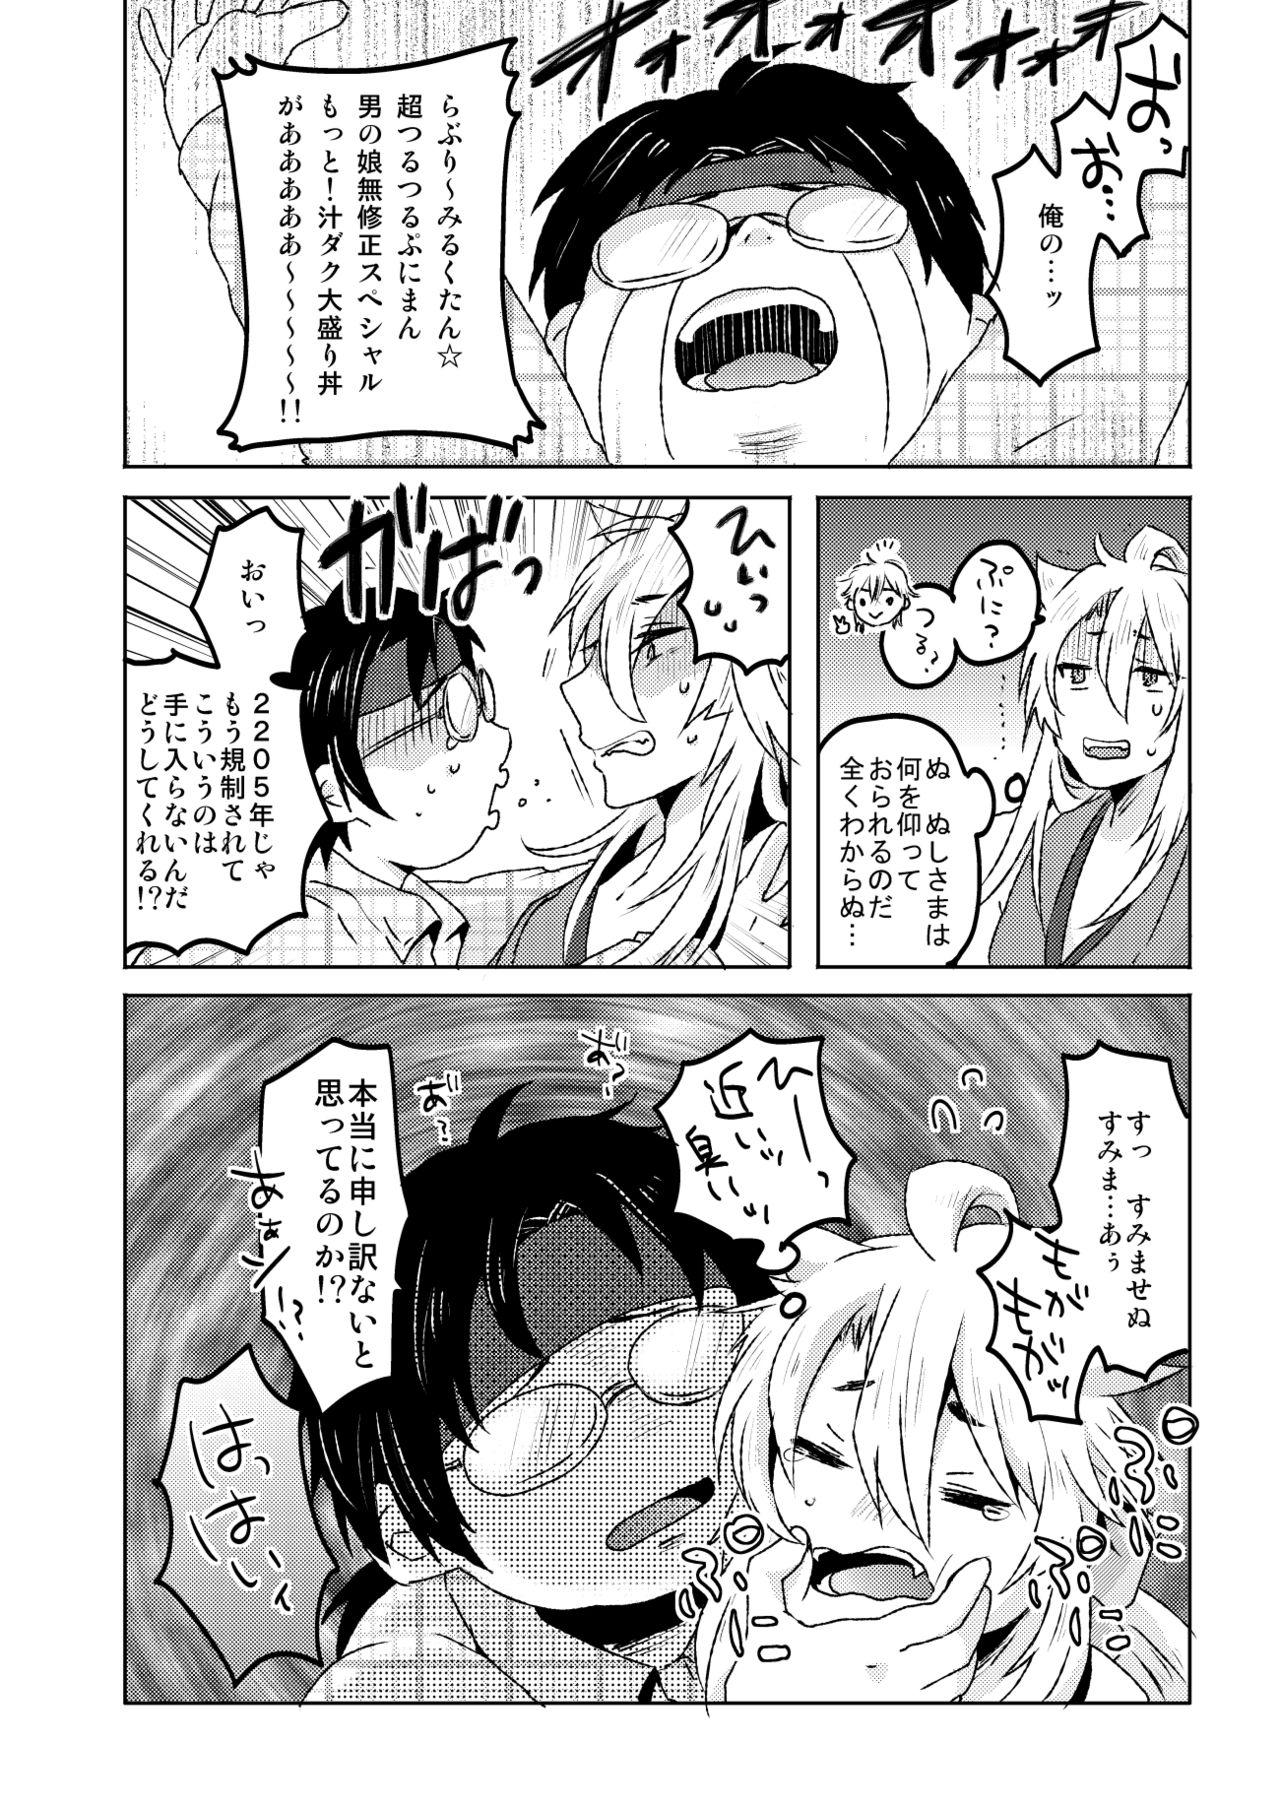 Dick Sucking 愛狐遊戯 - Touken ranbu Work - Page 8